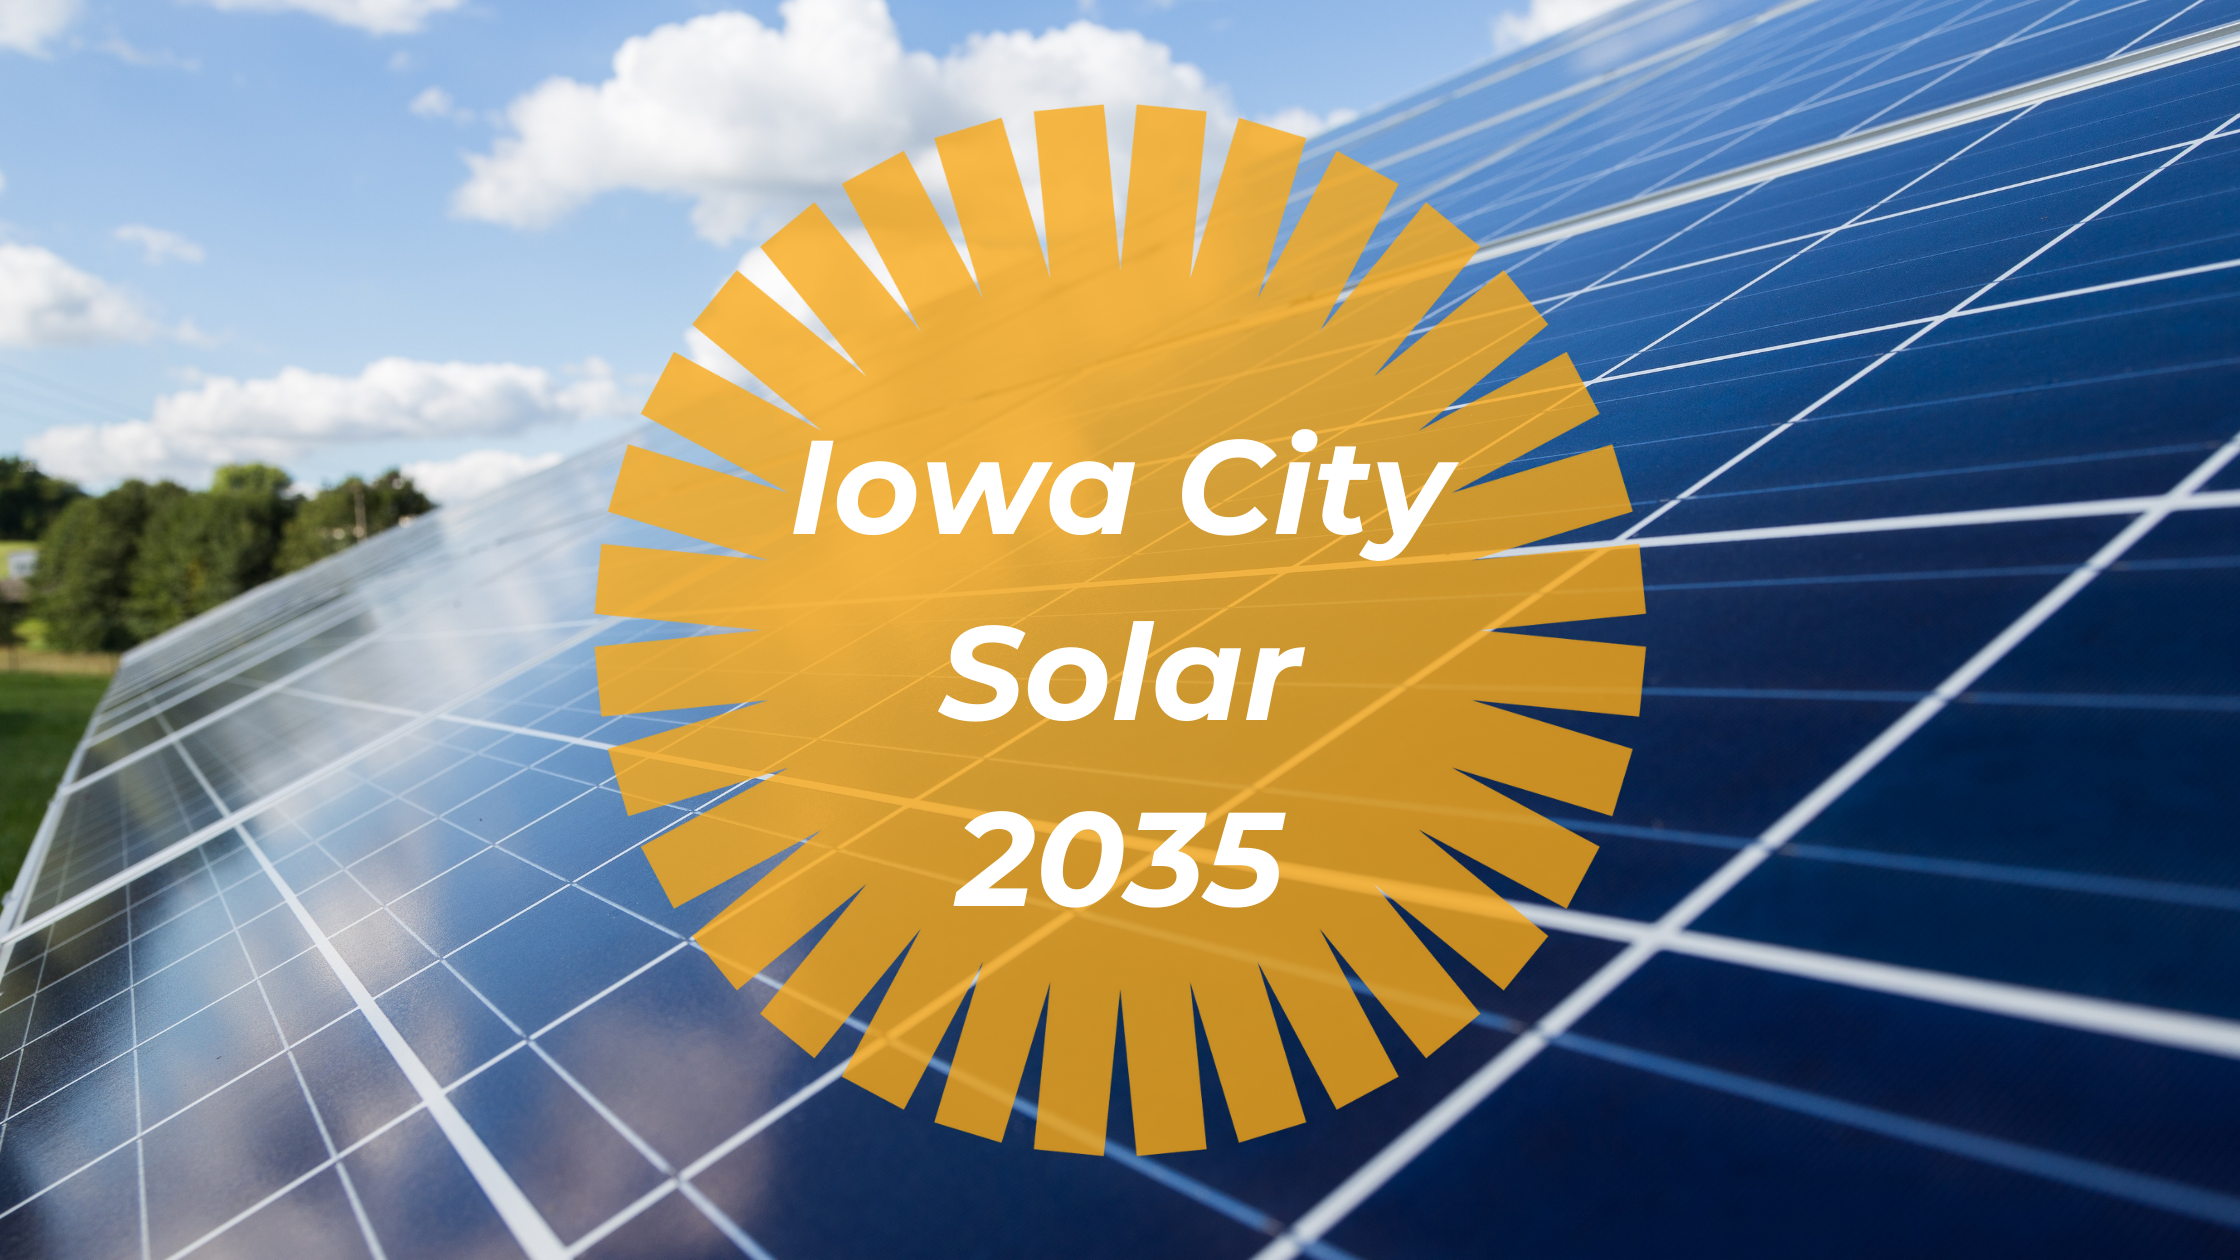 Iowa City Solar 2035